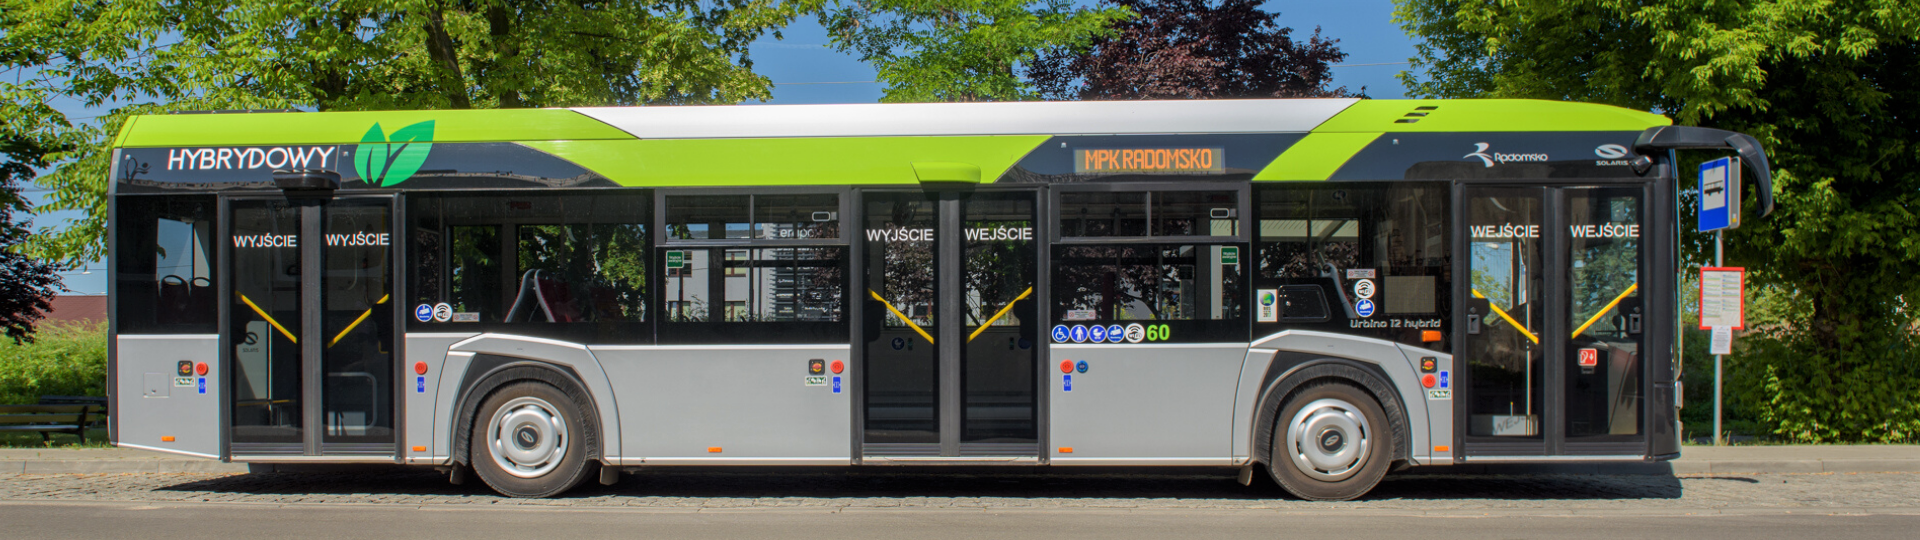 Satu Mare in Rumänien erhält moderne emissionsarme Hybridbusse von Solaris